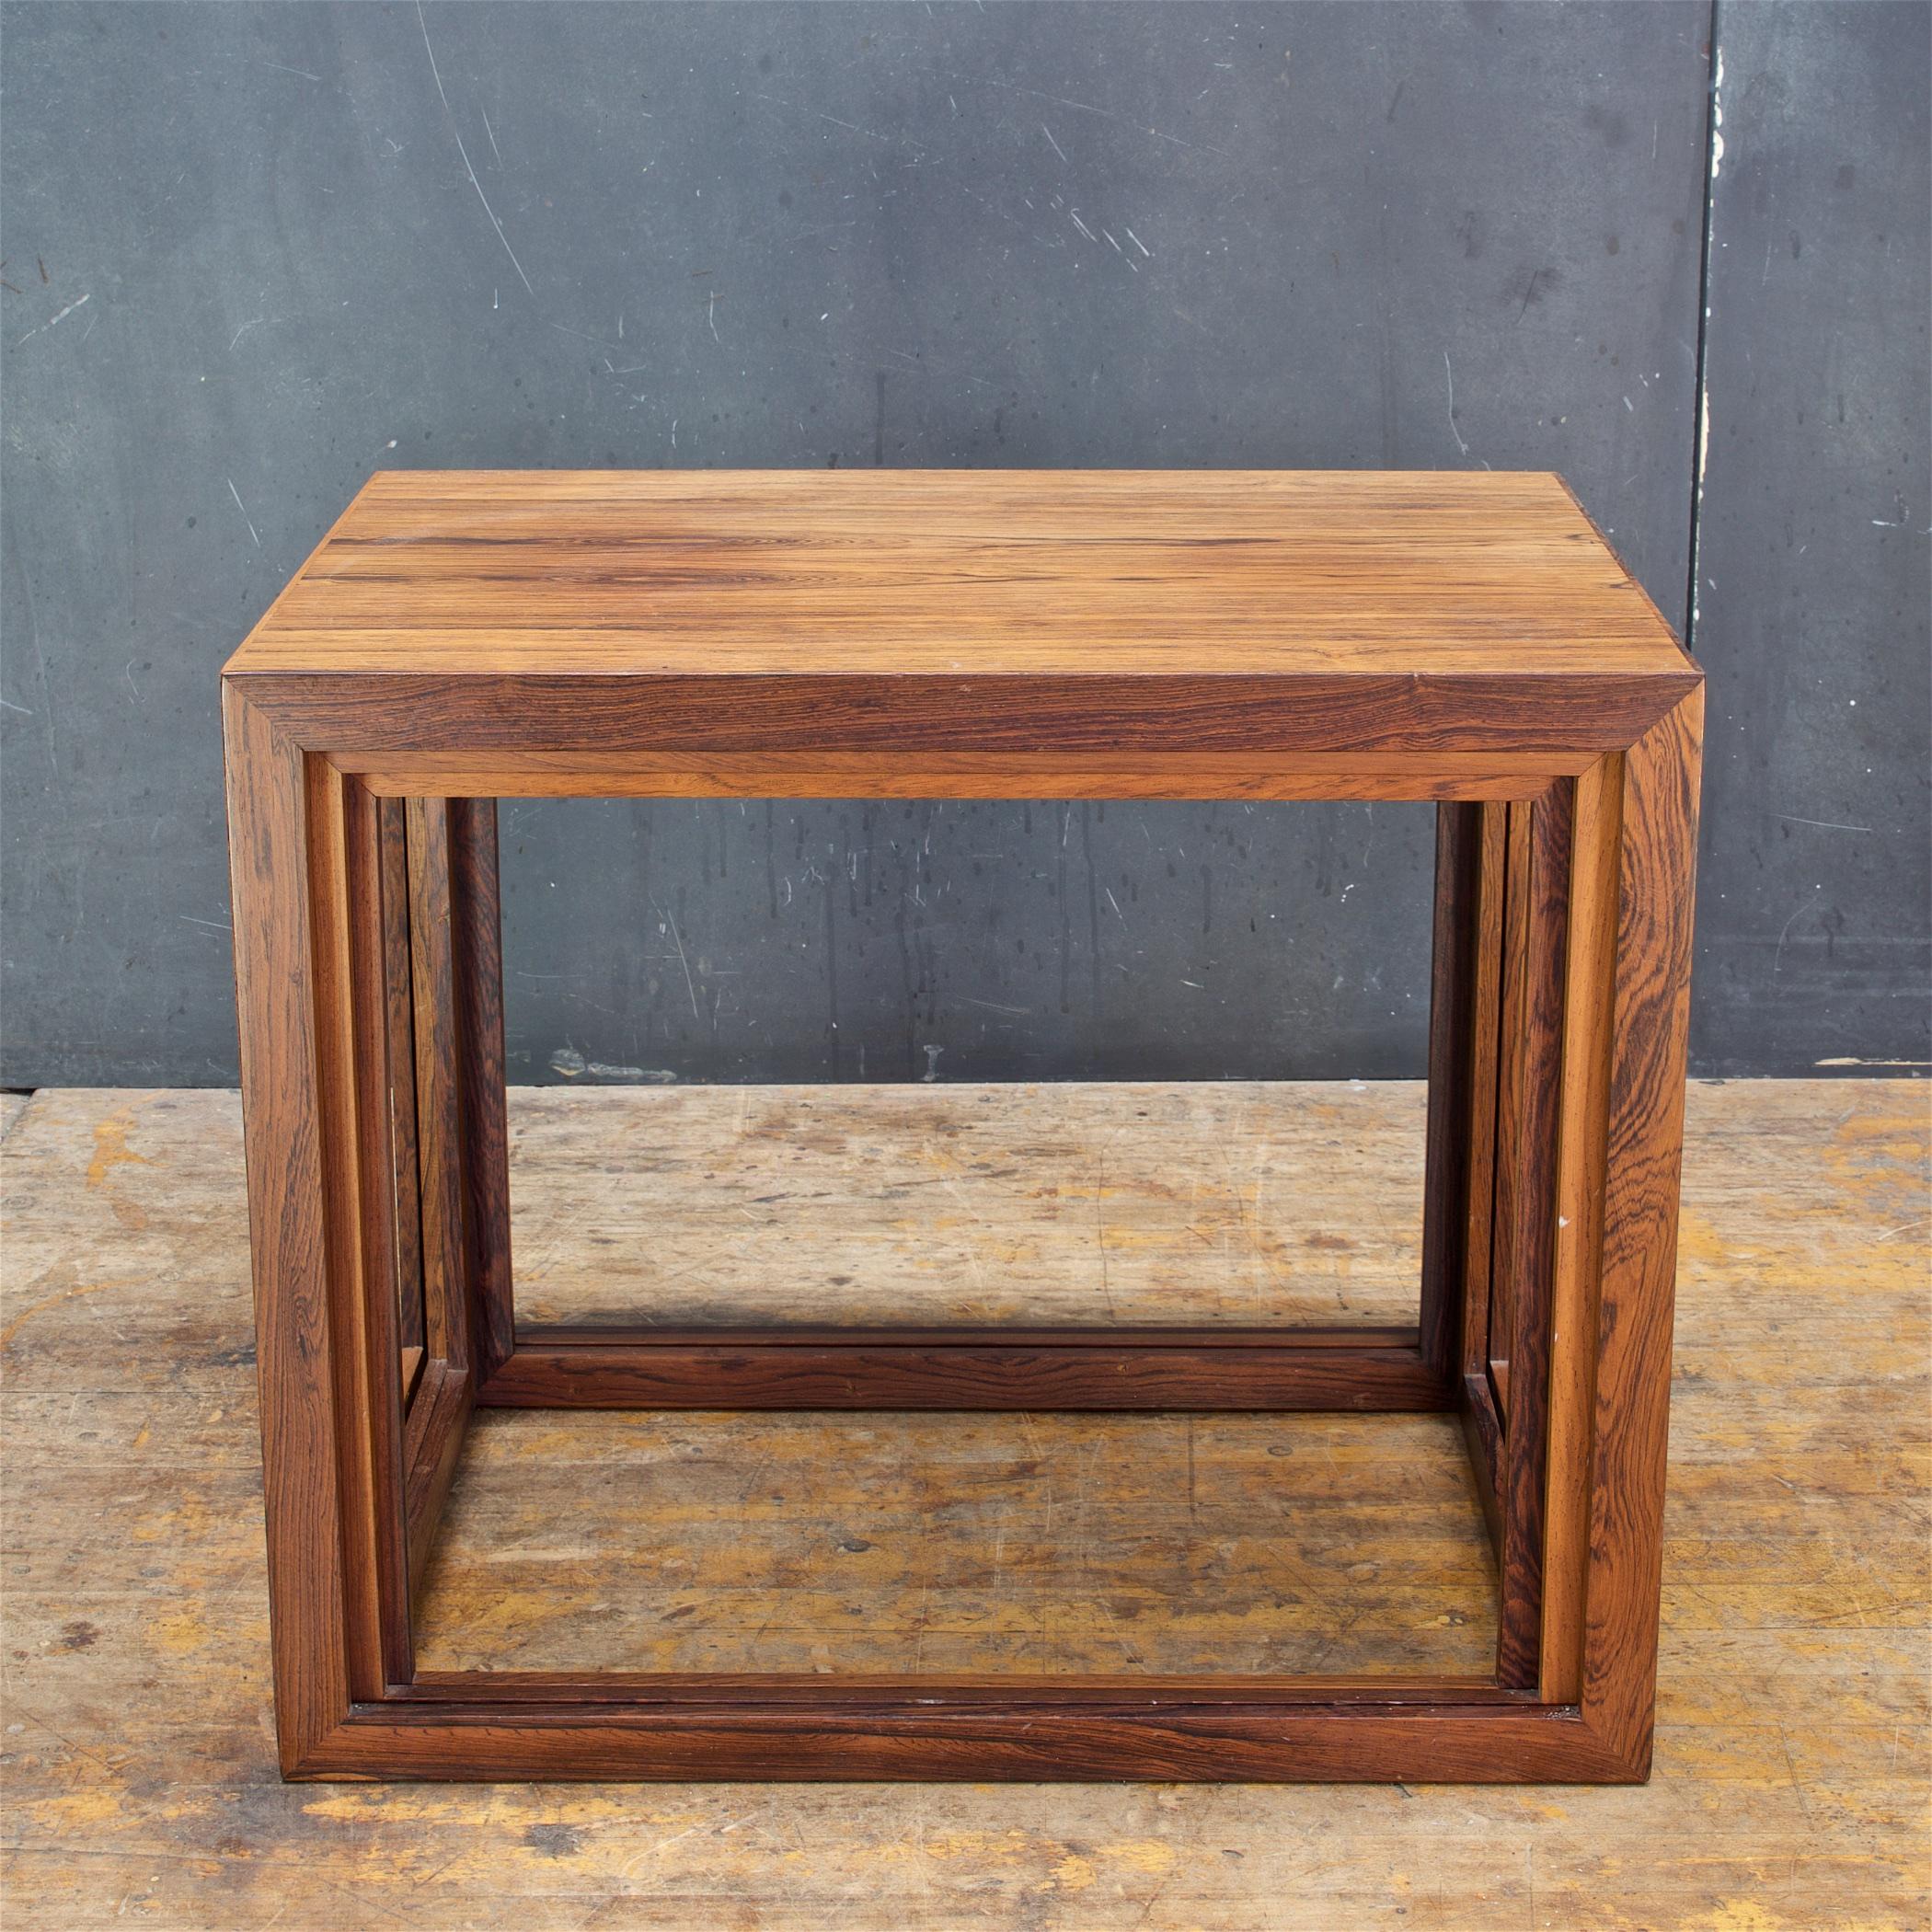 Tables empilables ou gigognes en bois de rose de Jørgen Bækmark, en forme de cubes rectangulaires. Design/One rare. La menuiserie est serrée.

La plus grande table extérieure : L 23,63 x P 16,5 x H 19,68 in.

 